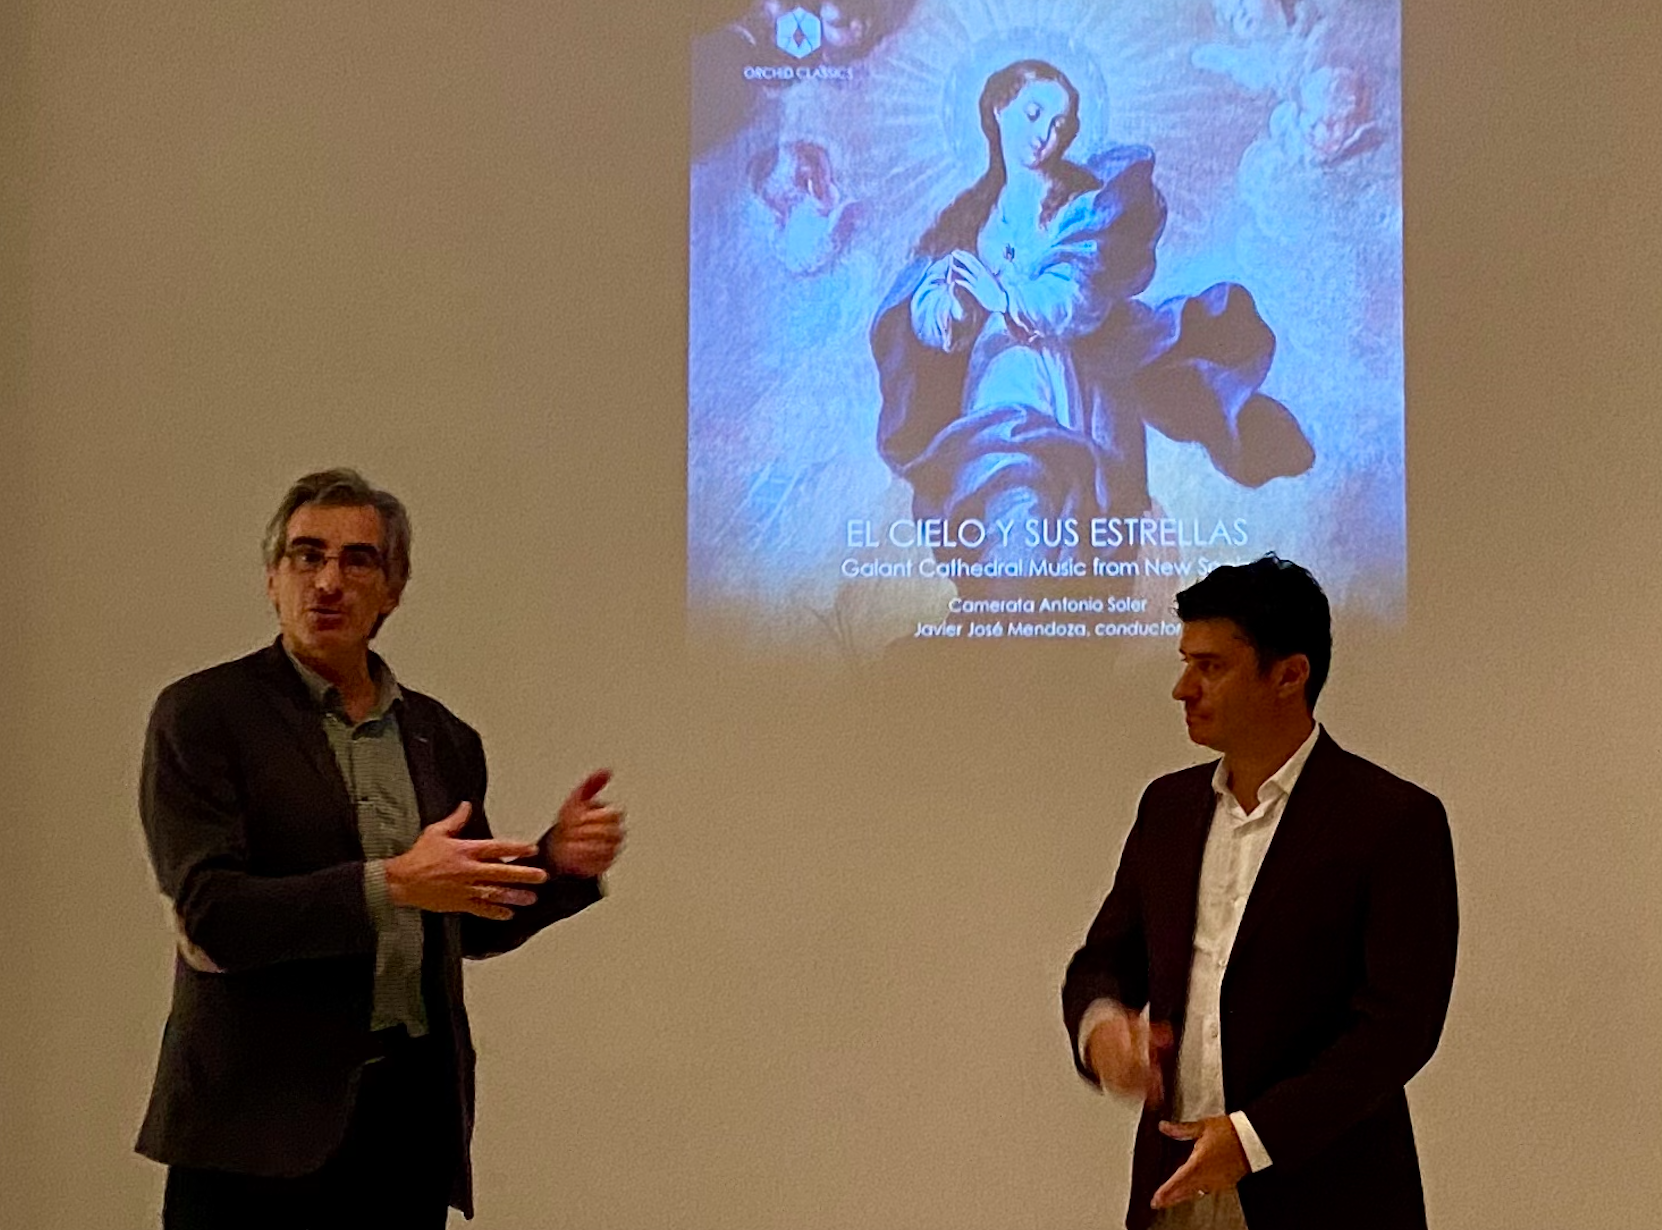 Gustavo Sánchez y Javier Mendoza durante la presentación del álbum "El Cielo y sus Estrellas" / Foto: Camerata Antonio Soler